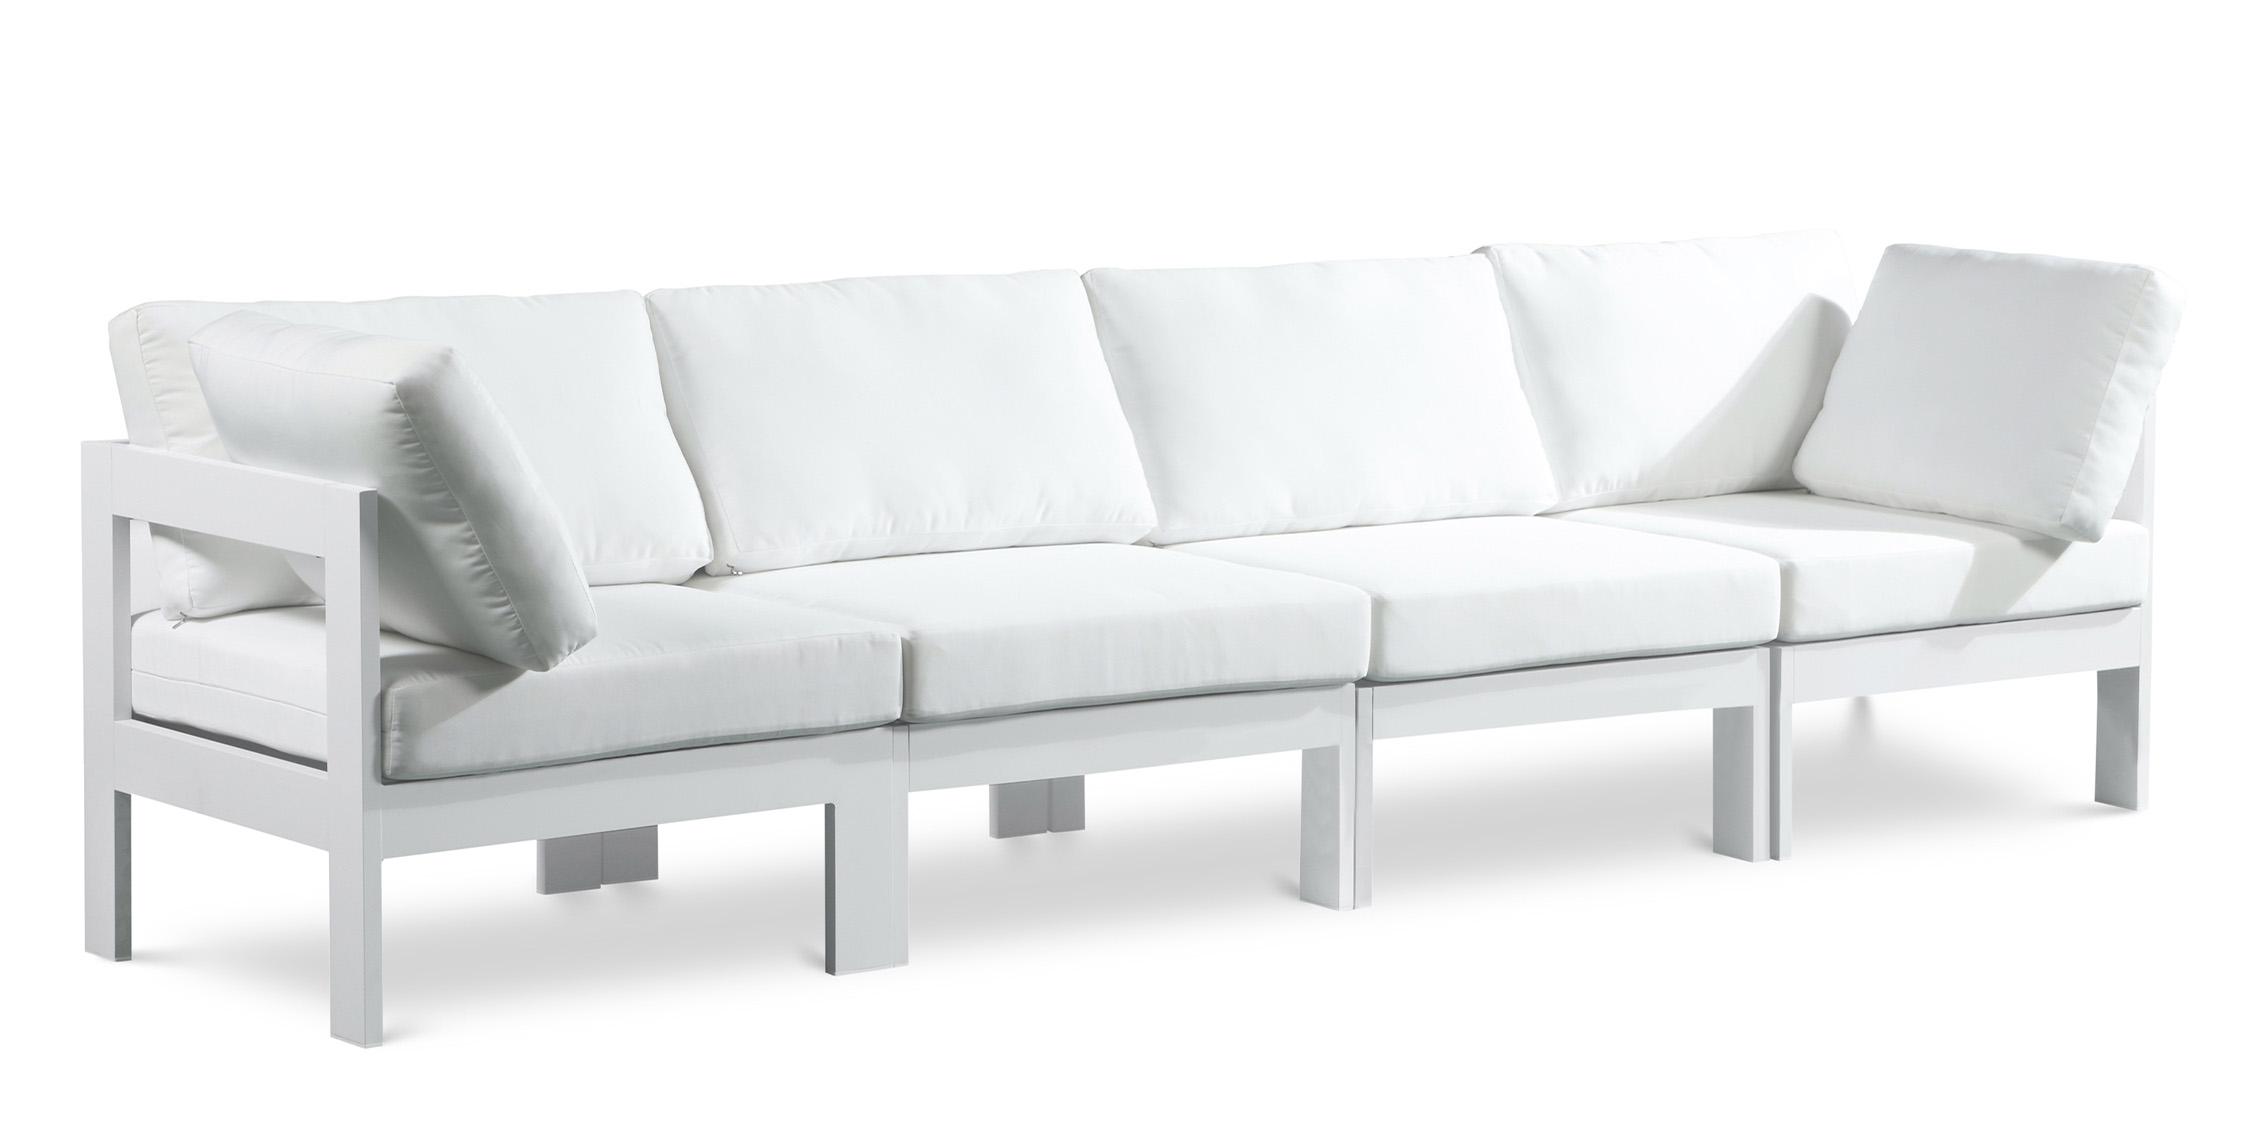 Contemporary Patio Sofa NIZUC 375White-S120A 375White-S120A in White Fabric